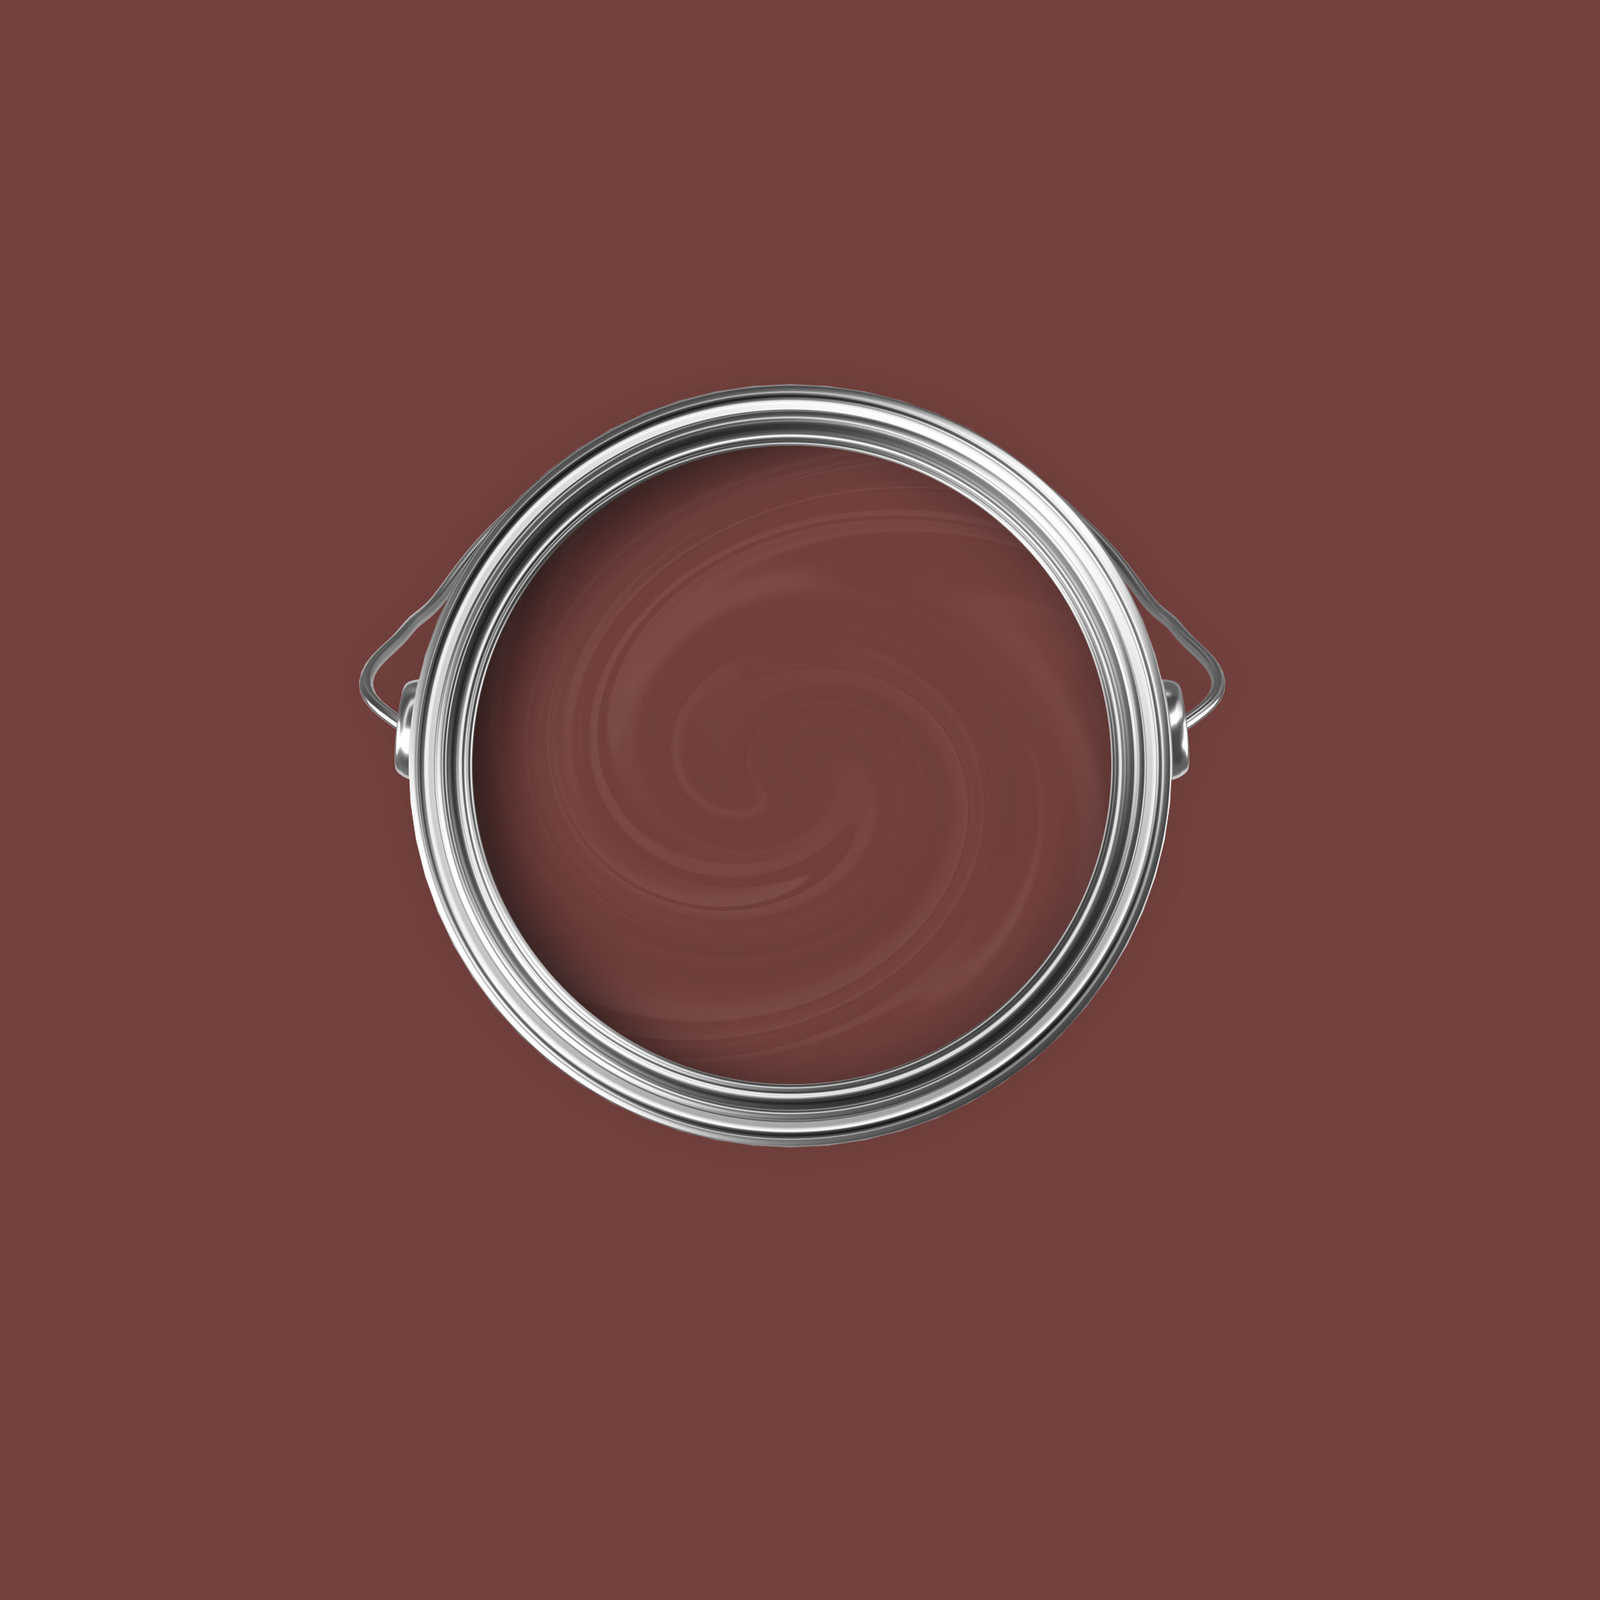             Premium Muurverf edel kastanje rood »Luxury Lipstick« NW1007 – 2,5 Liter
        